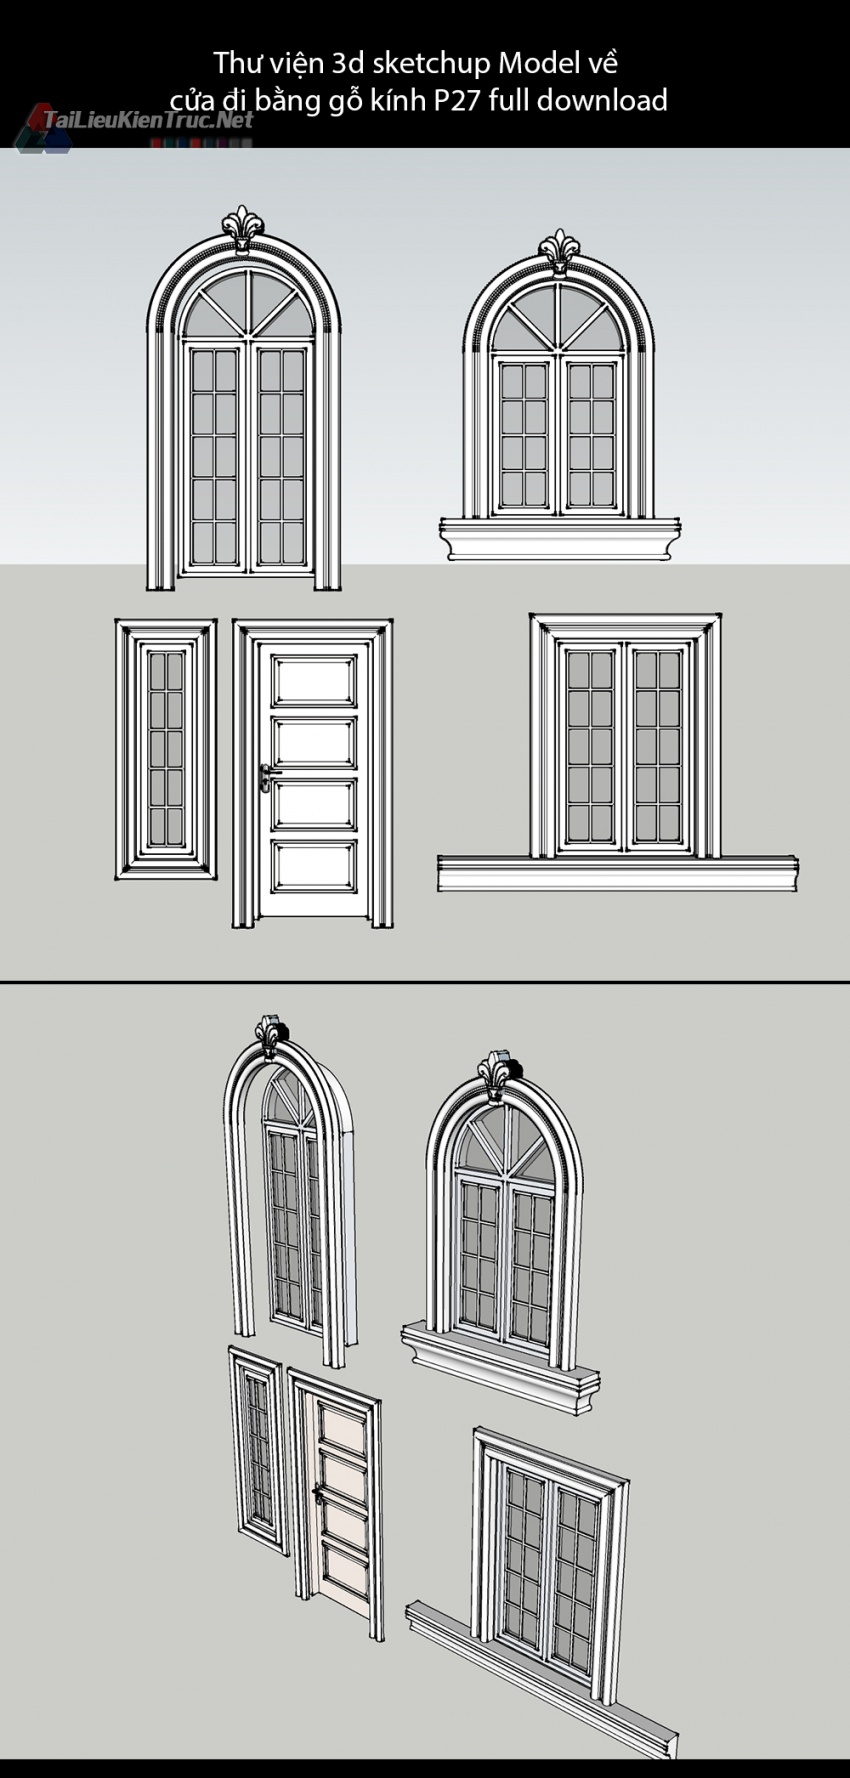 Thư viện 3d sketchup Model về cửa đi bằng gỗ kính P27 full download